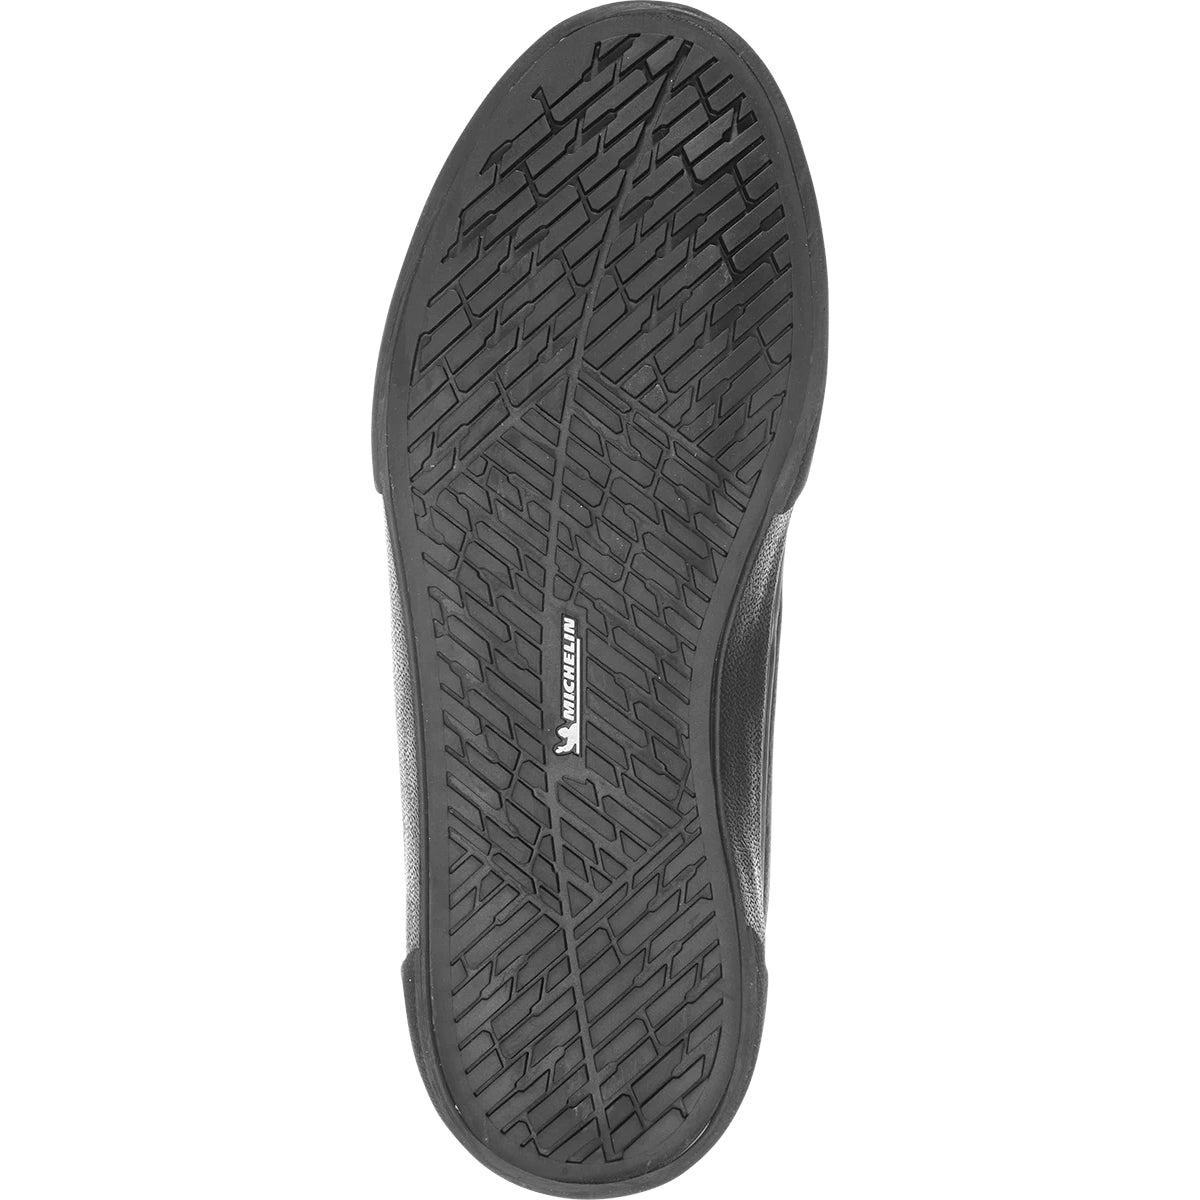 Black/Black Chris Joslin Vulc Etnies Skateboarding Shoe Bottom